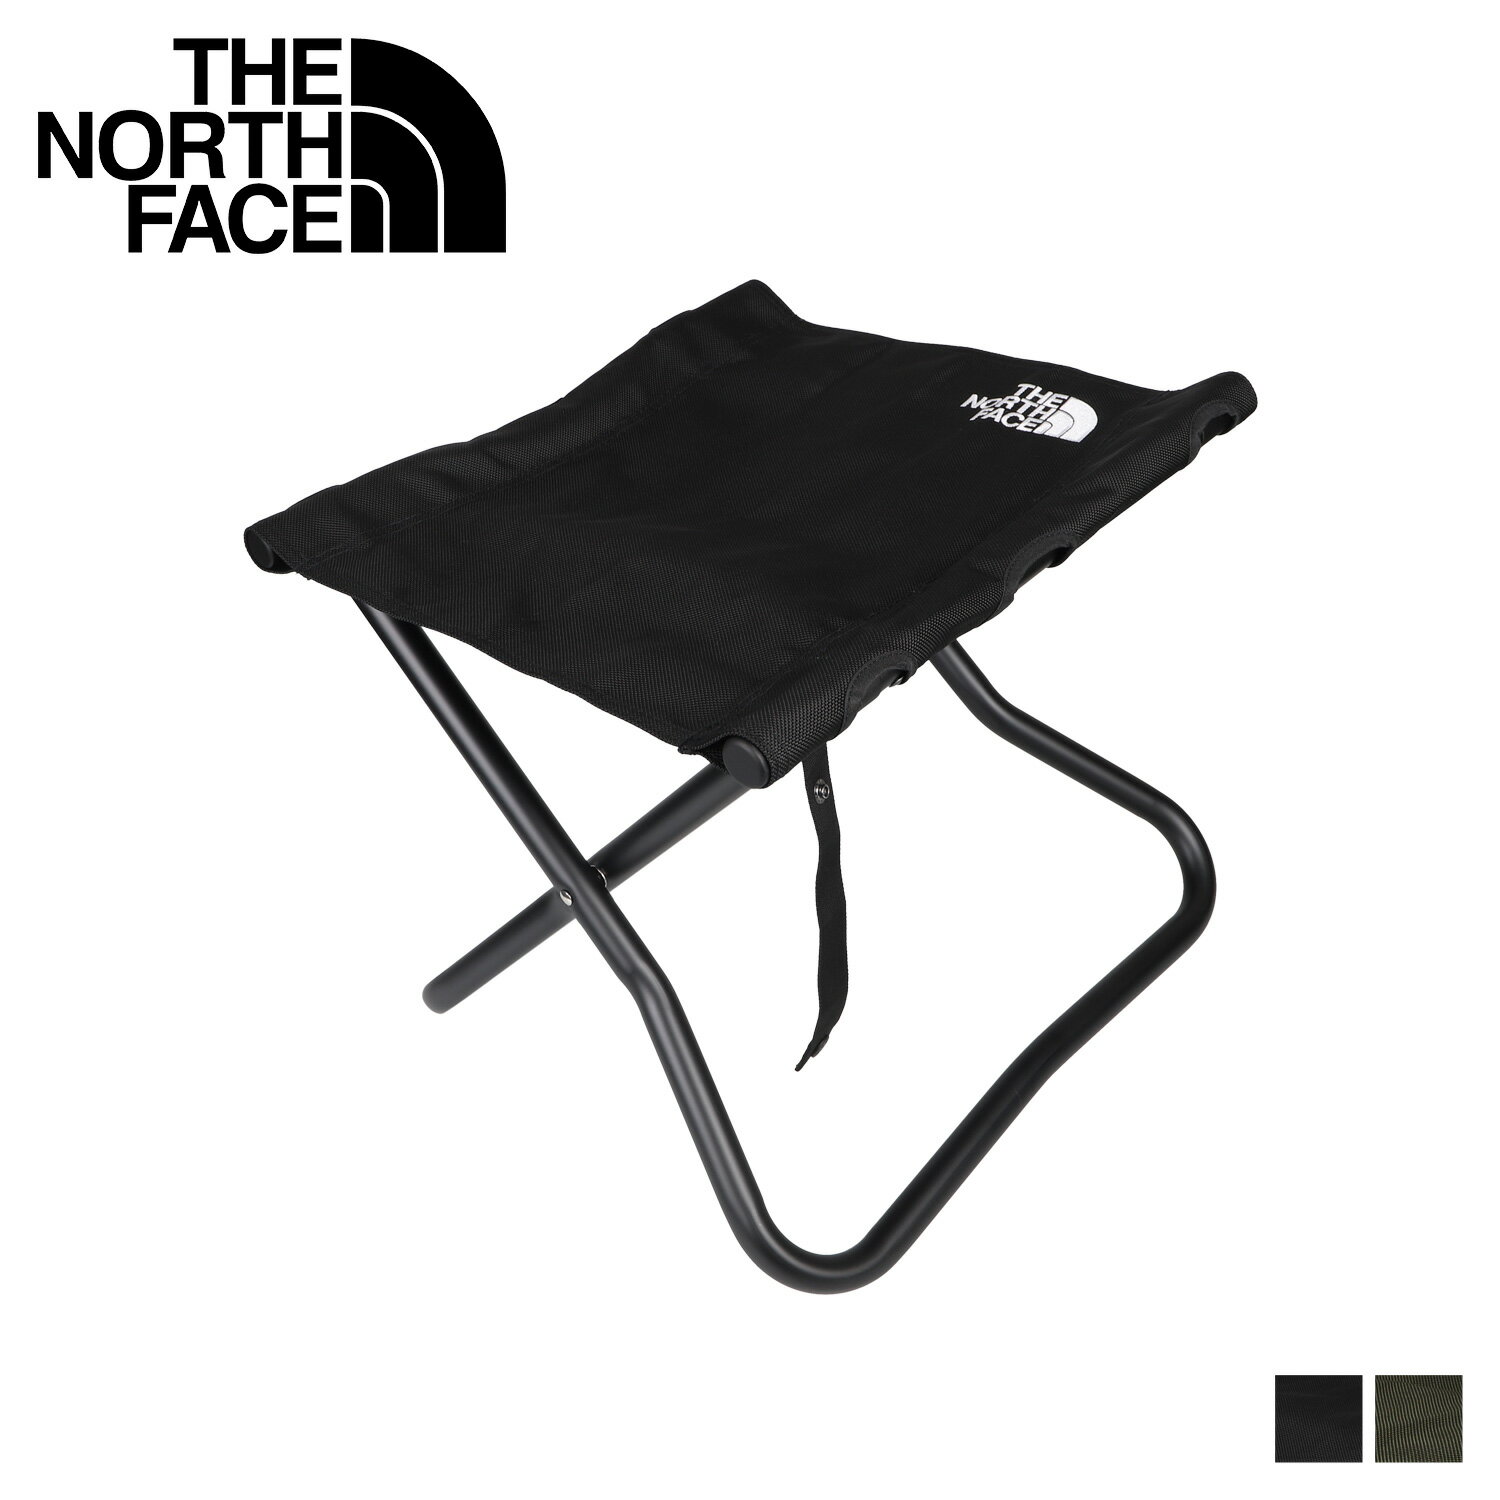 THE NORTH FACE ノースフェイス アウトドアチェア キャンプ椅子 キャンプスツール 折りたたみ スリム コンパクト 軽量 TNF CAMP STOOL ブラック カーキ 黒 NN32200